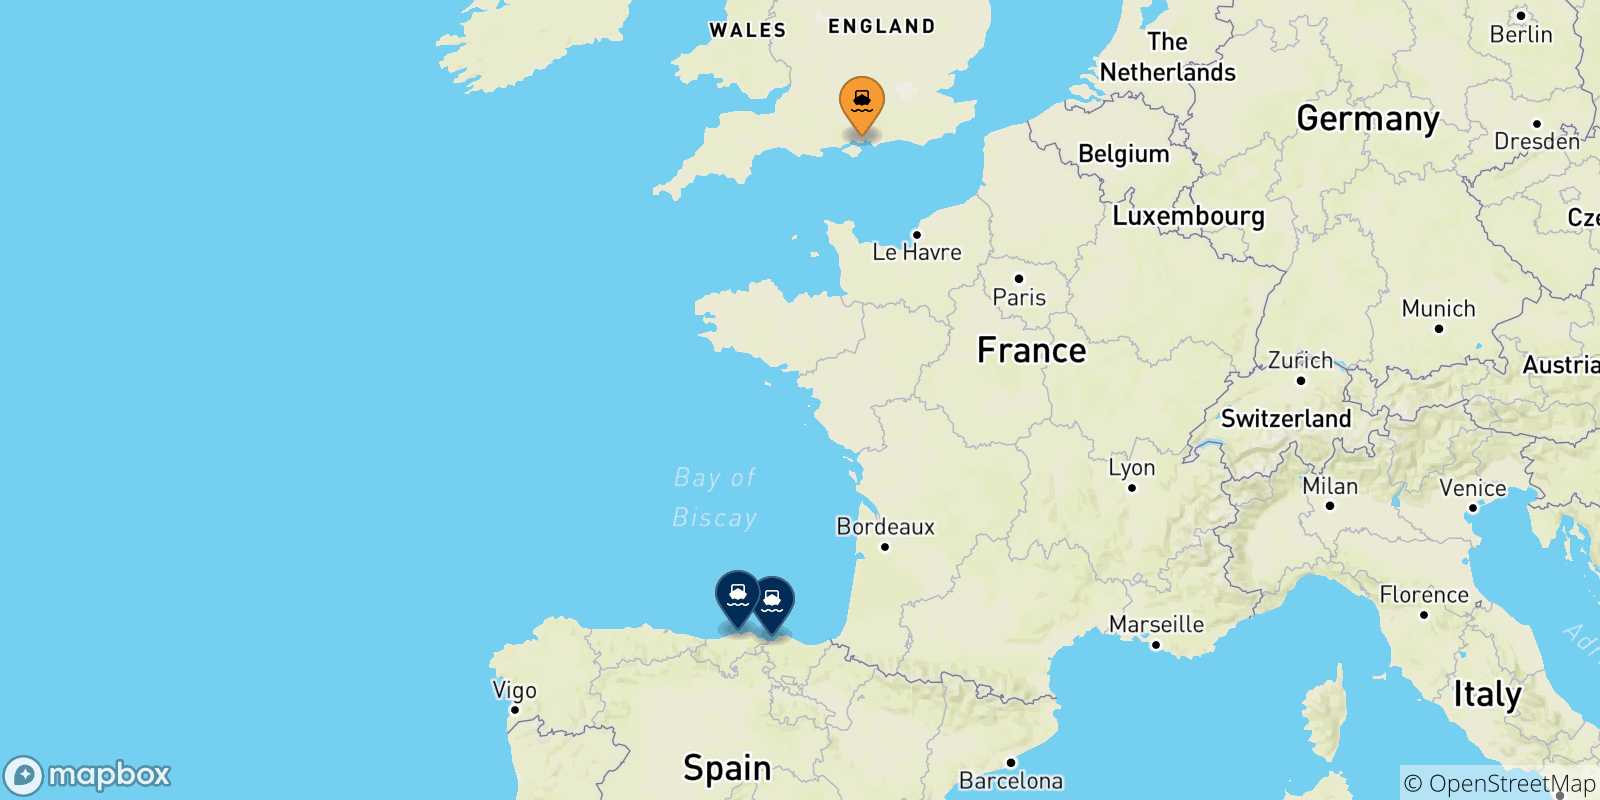 Mappa delle possibili rotte tra Portsmouth e la Spagna